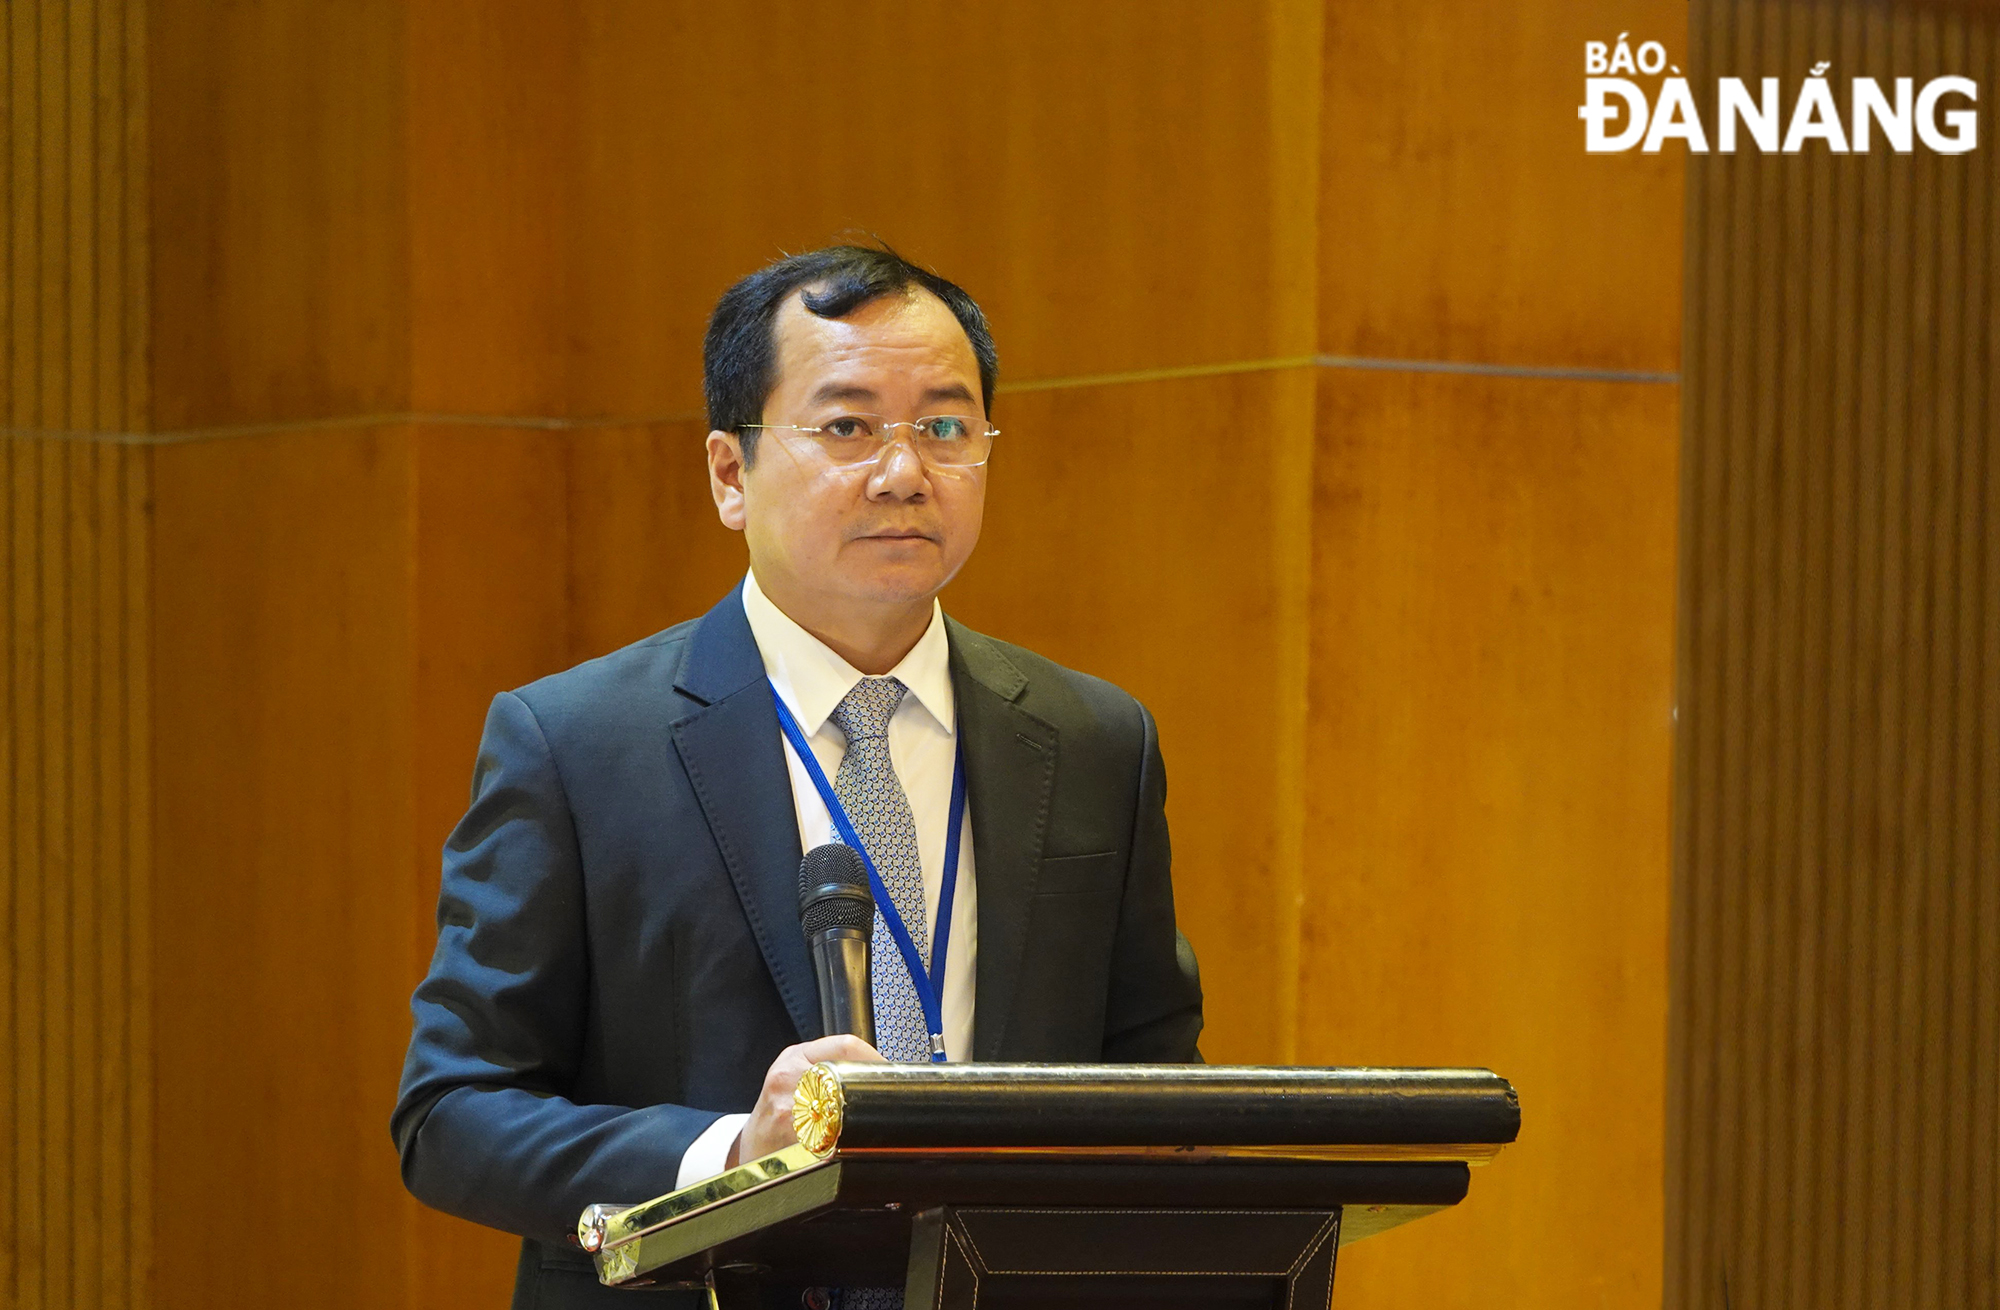 Tổng cục Trưởng Tổng cục Thủy sản Trần Đình Luân phát biểu khai mạc hội nghị trong sáng 28-11 tại Đà Nẵng. Ảnh: VĂN HOÀNG